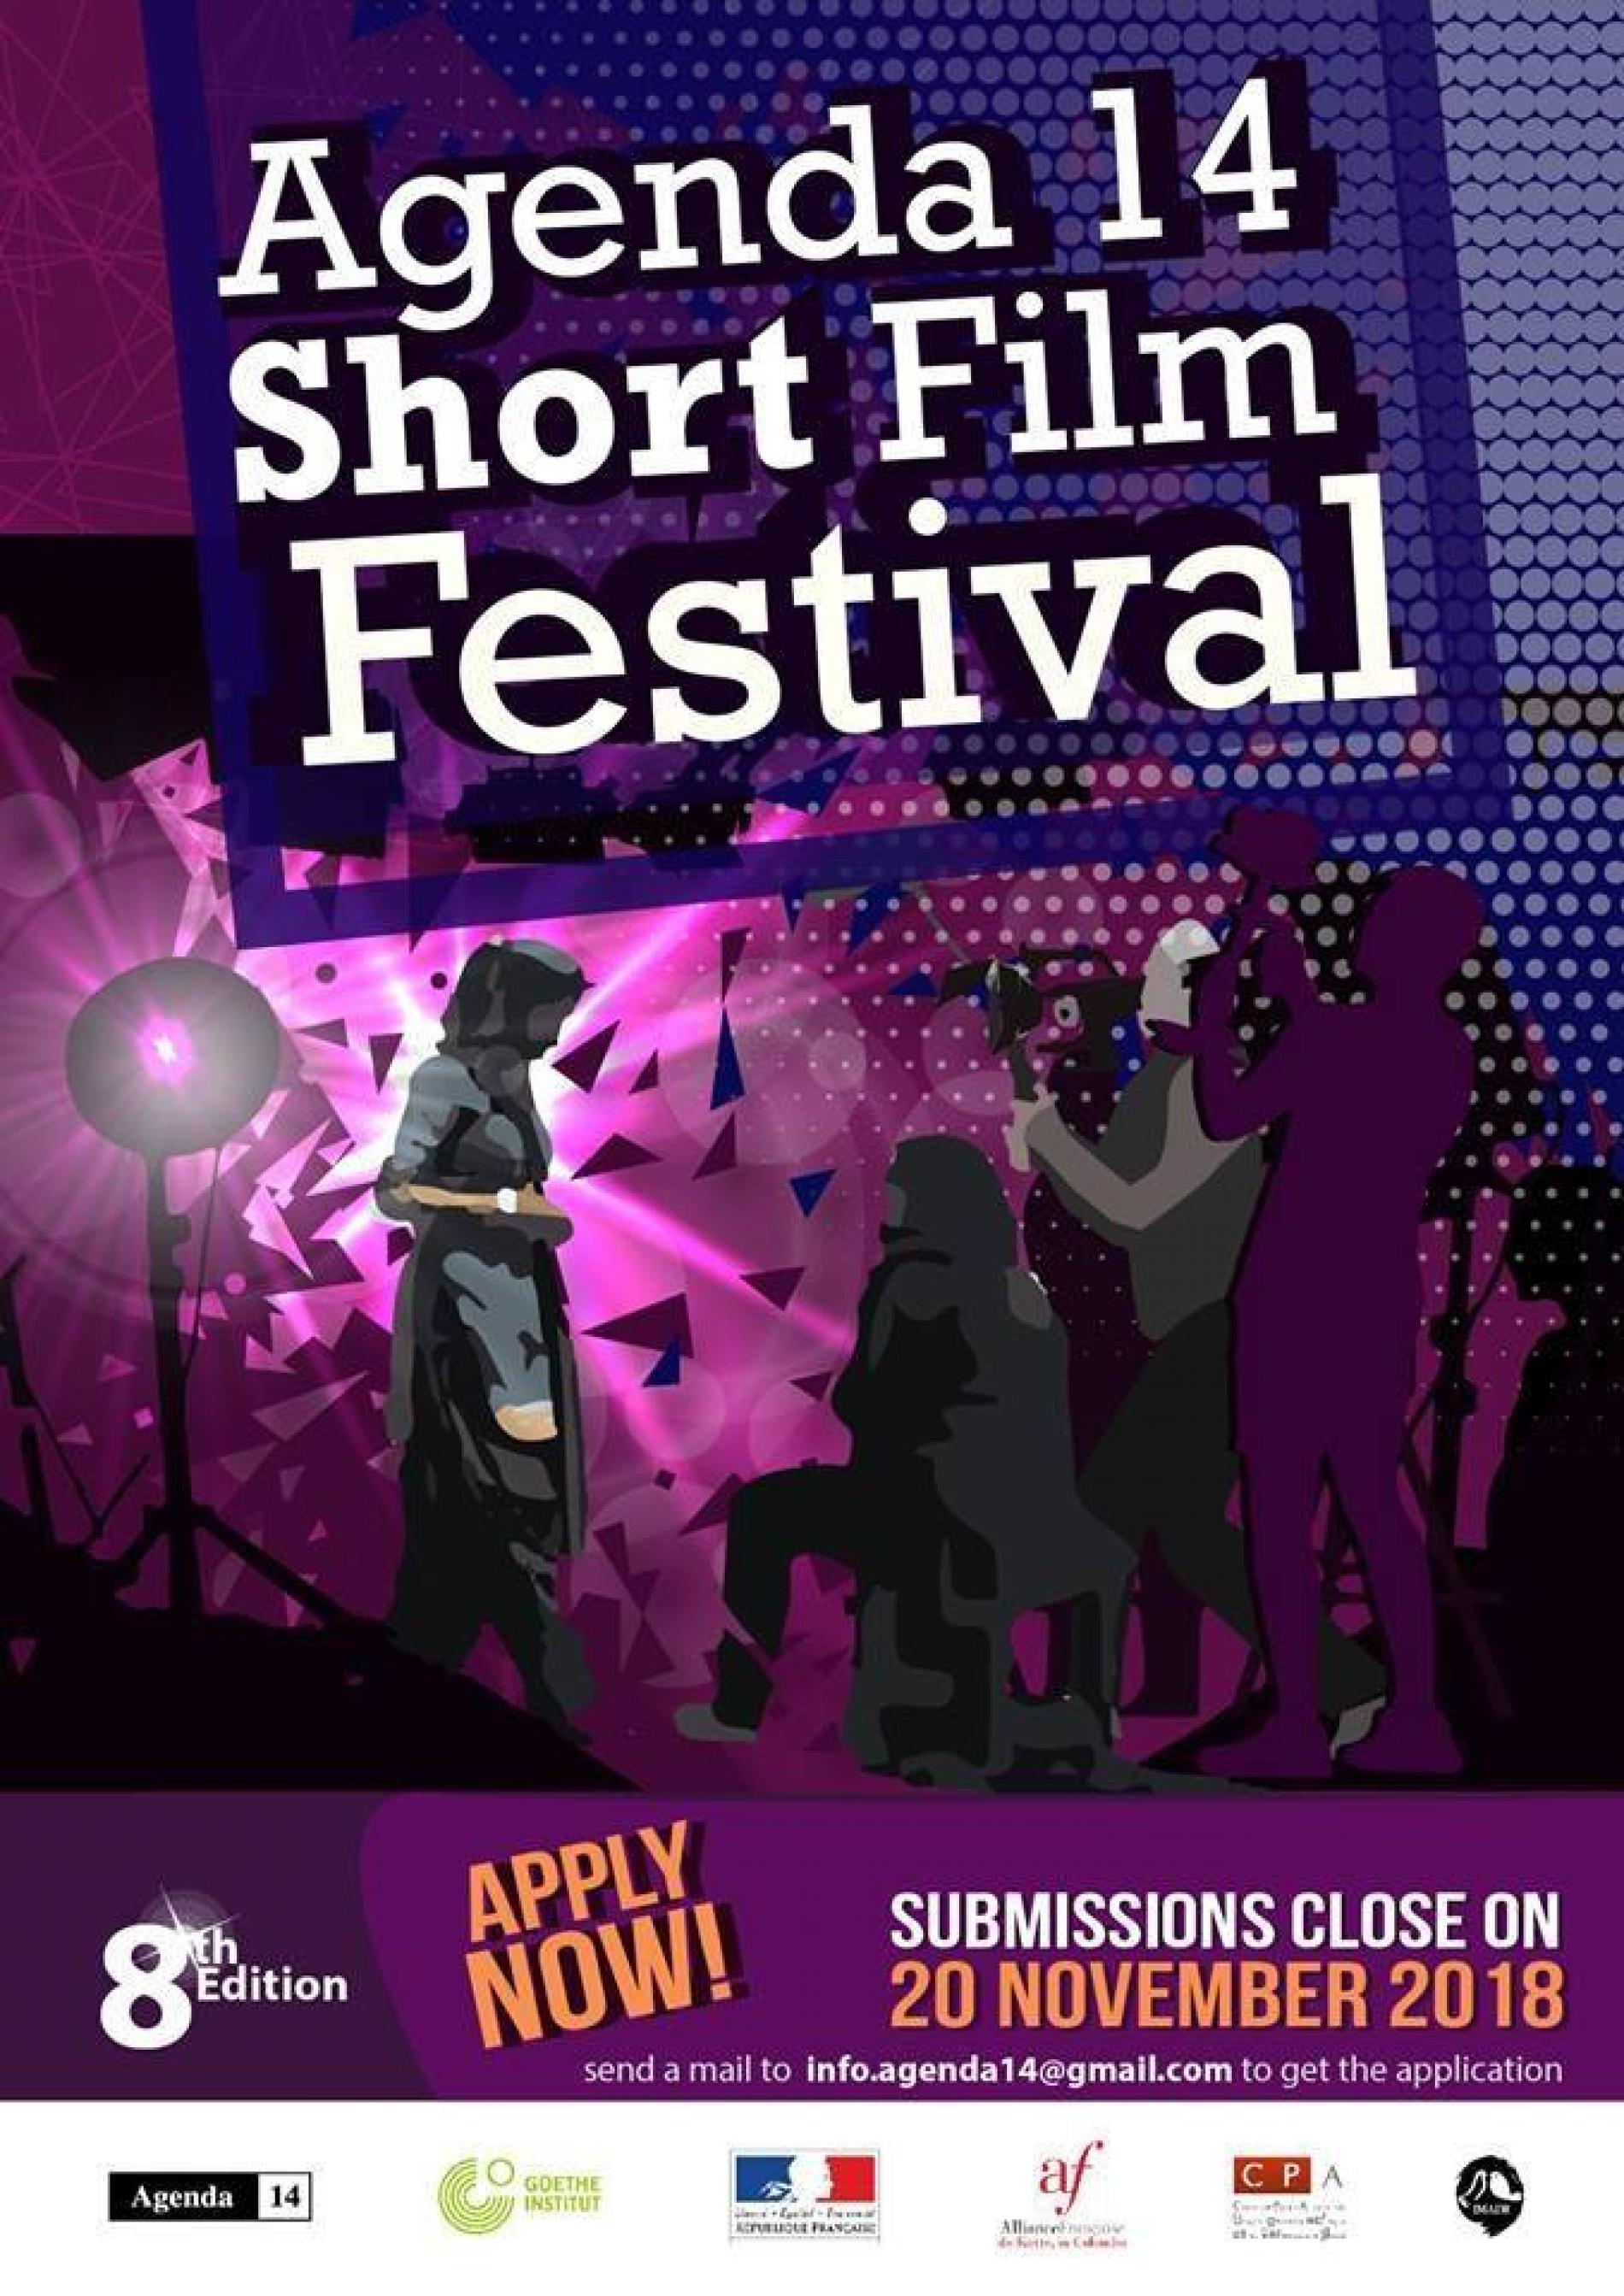 Agenda 14 Shortfilmfestival